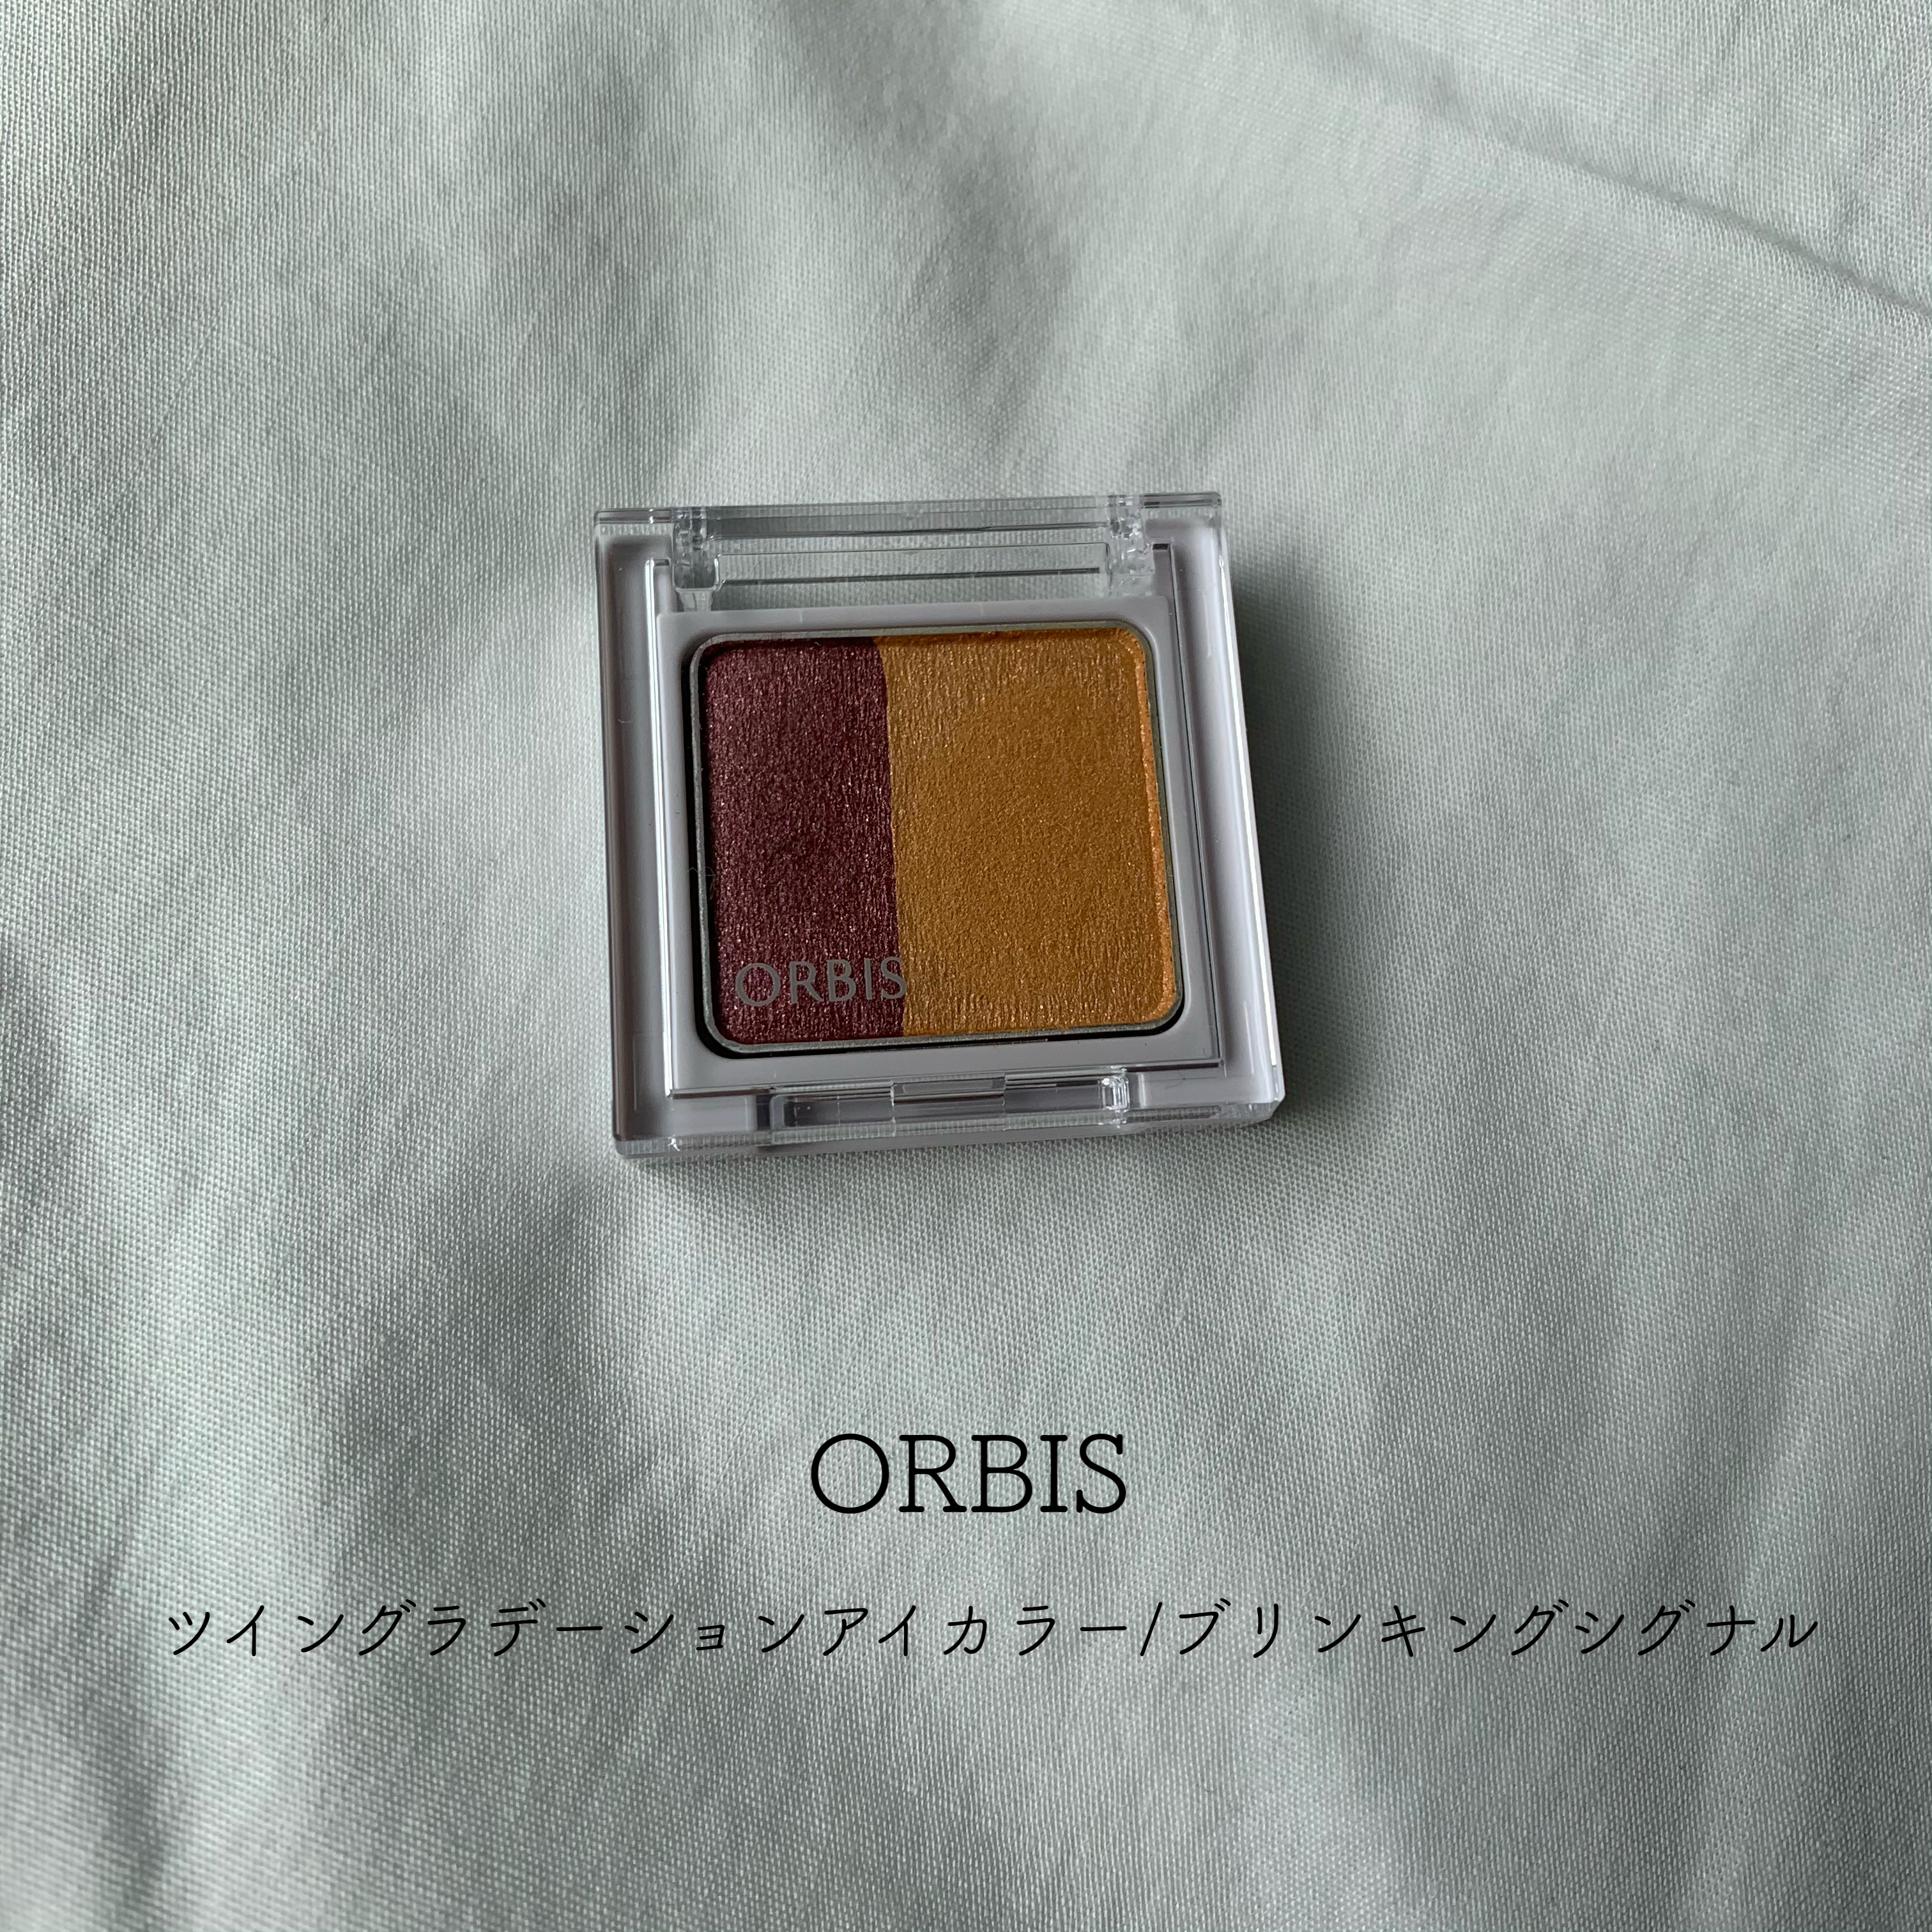 ORBIS(オルビス) ツイングラデーションアイカラーの良い点・メリットに関するとあさんの口コミ画像1